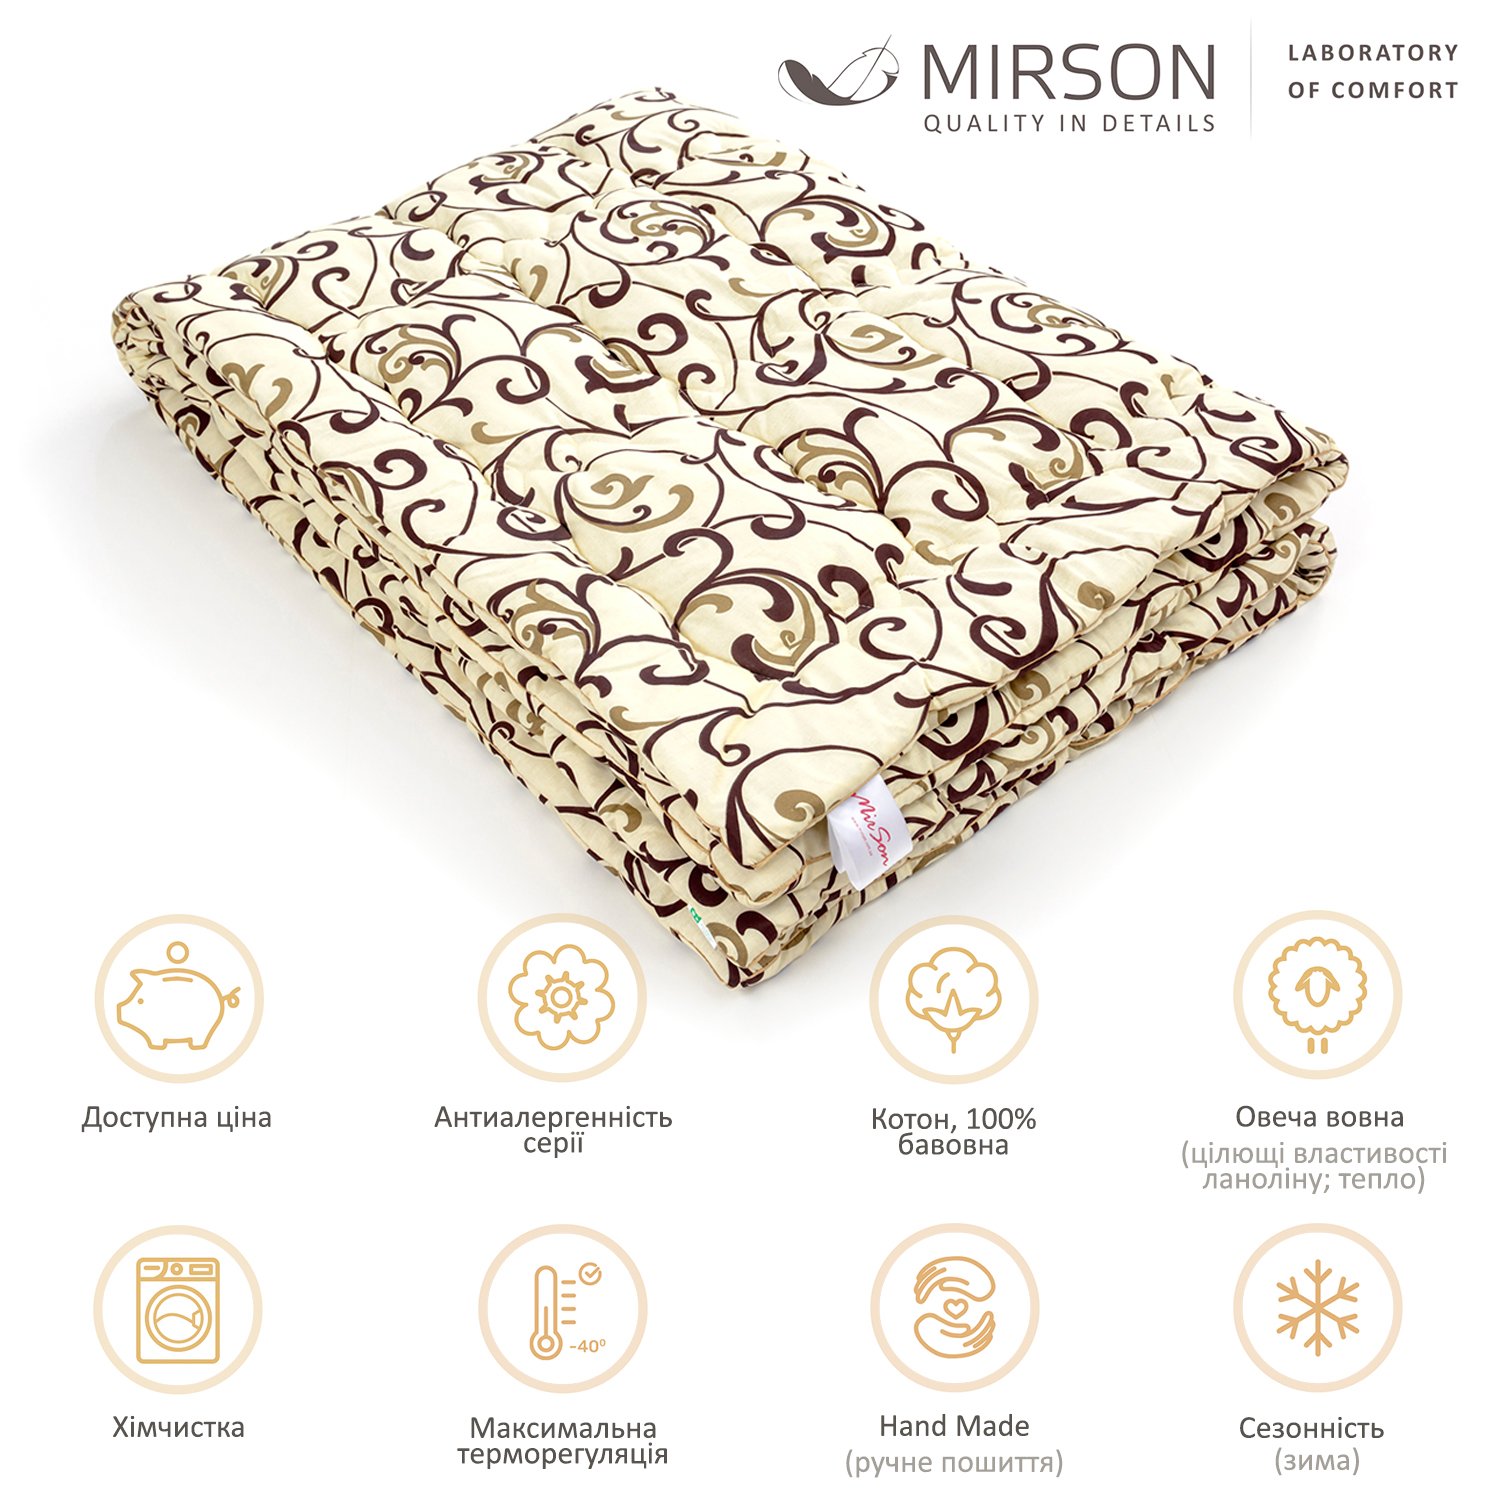 Одеяло шерстяное MirSon Hand Made №163, зимнее, 155x215 см, бежевое с узором - фото 5